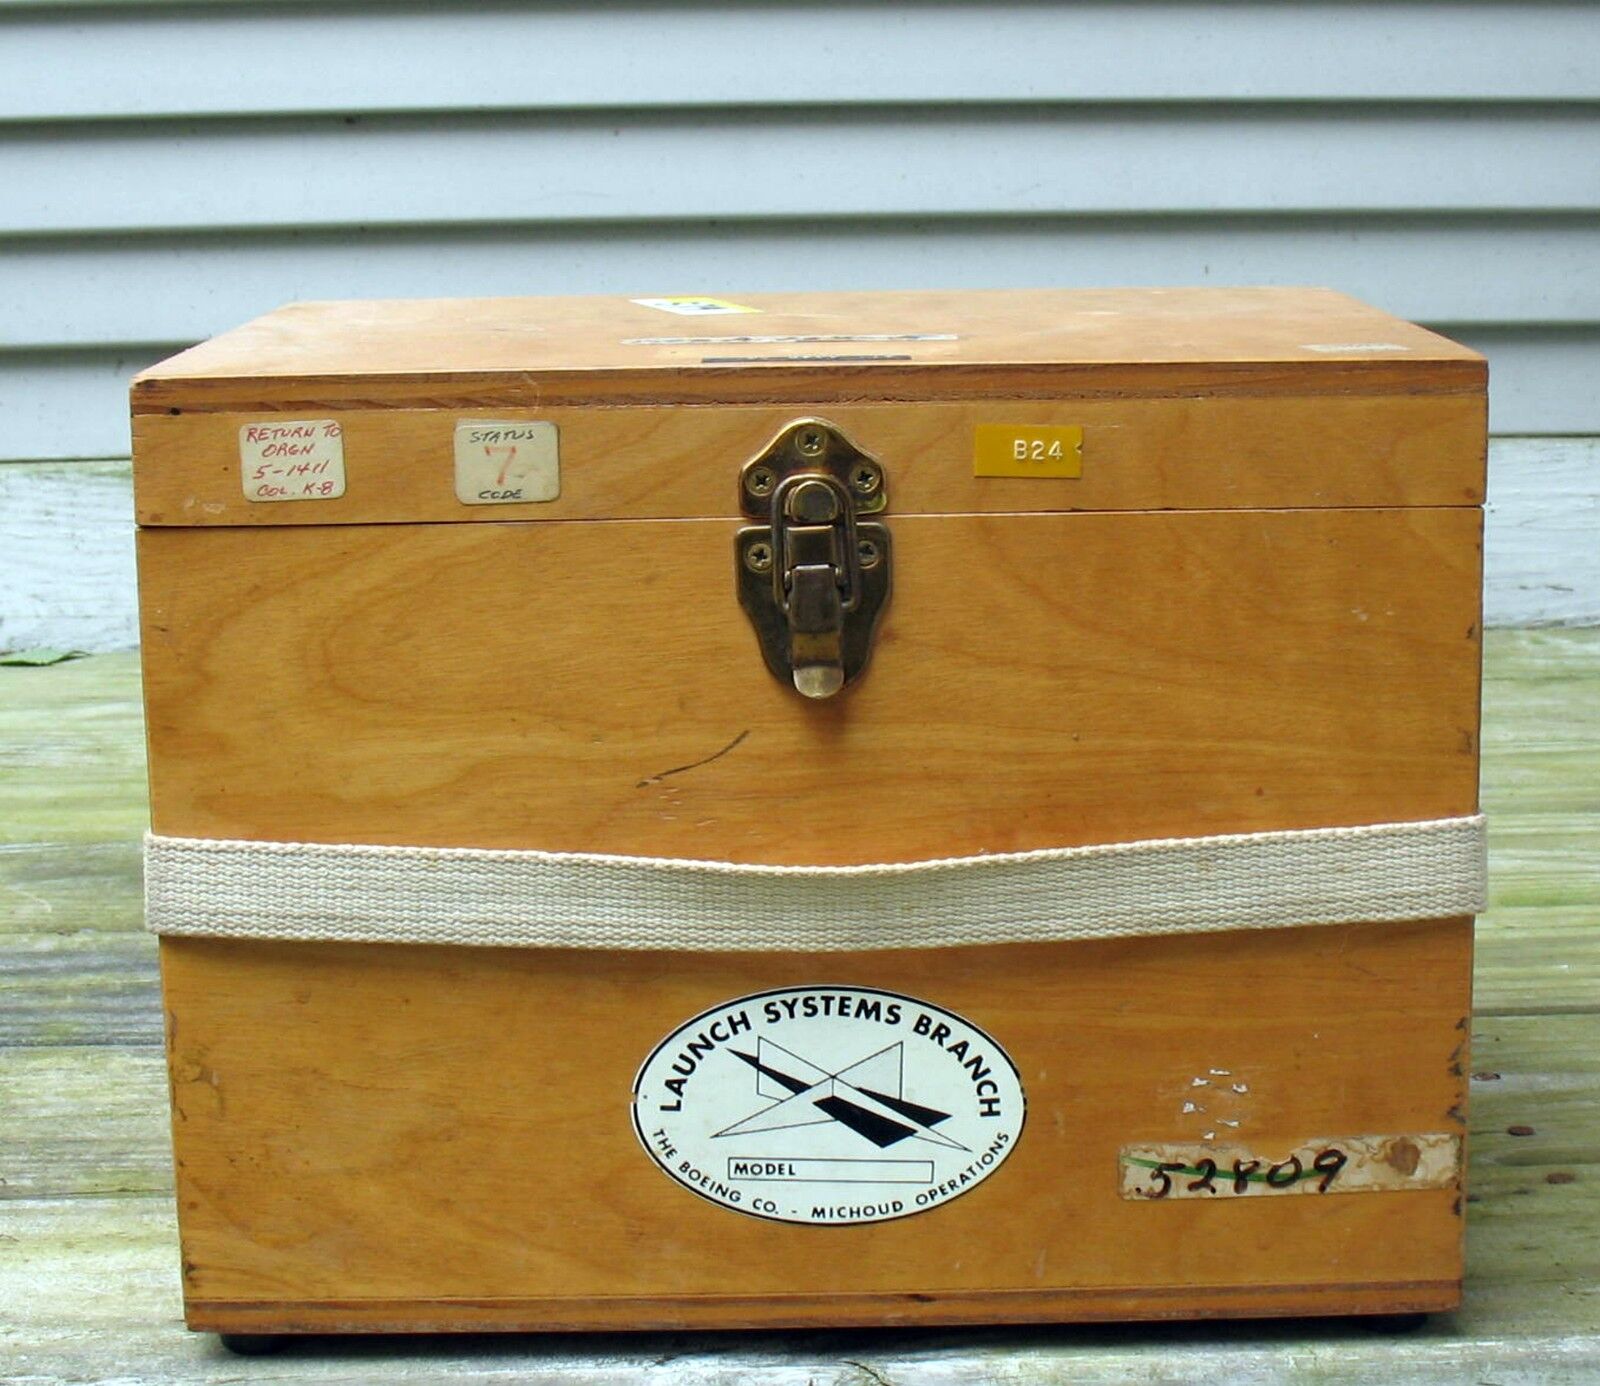 Incredibile Authentic Original Apollo Program Equipment Marked NASA w/Boeing Box